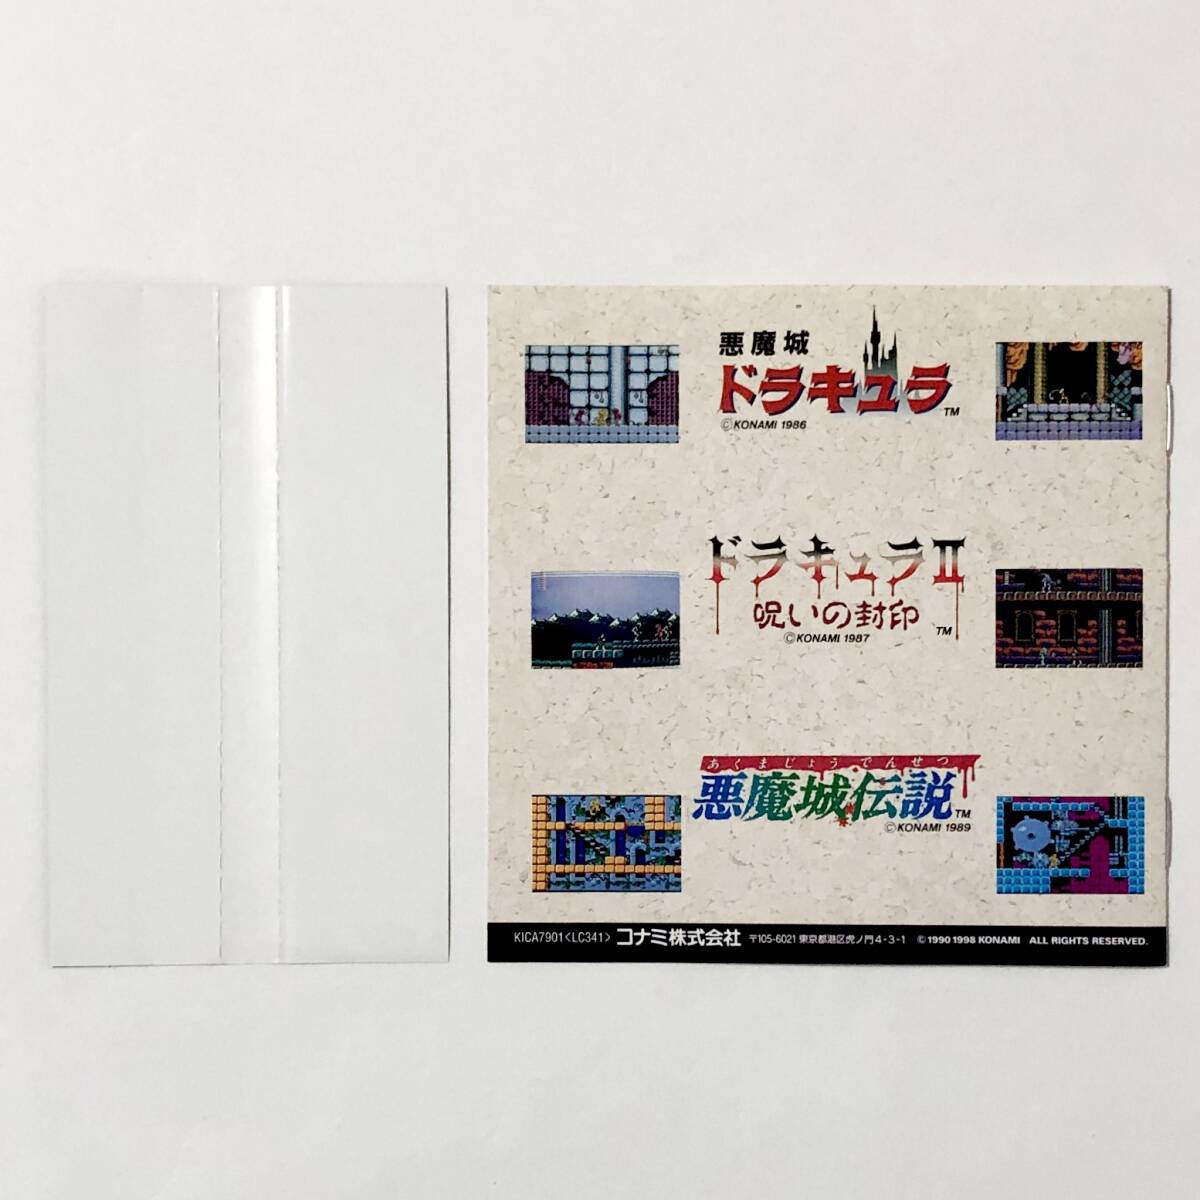 ゲーム音楽CD 悪魔城ドラキュラ ベスト / Akumajo Dracura Best 帯付き 痛みあり コナミ Famicom Castlevania Series OST Konami_画像10